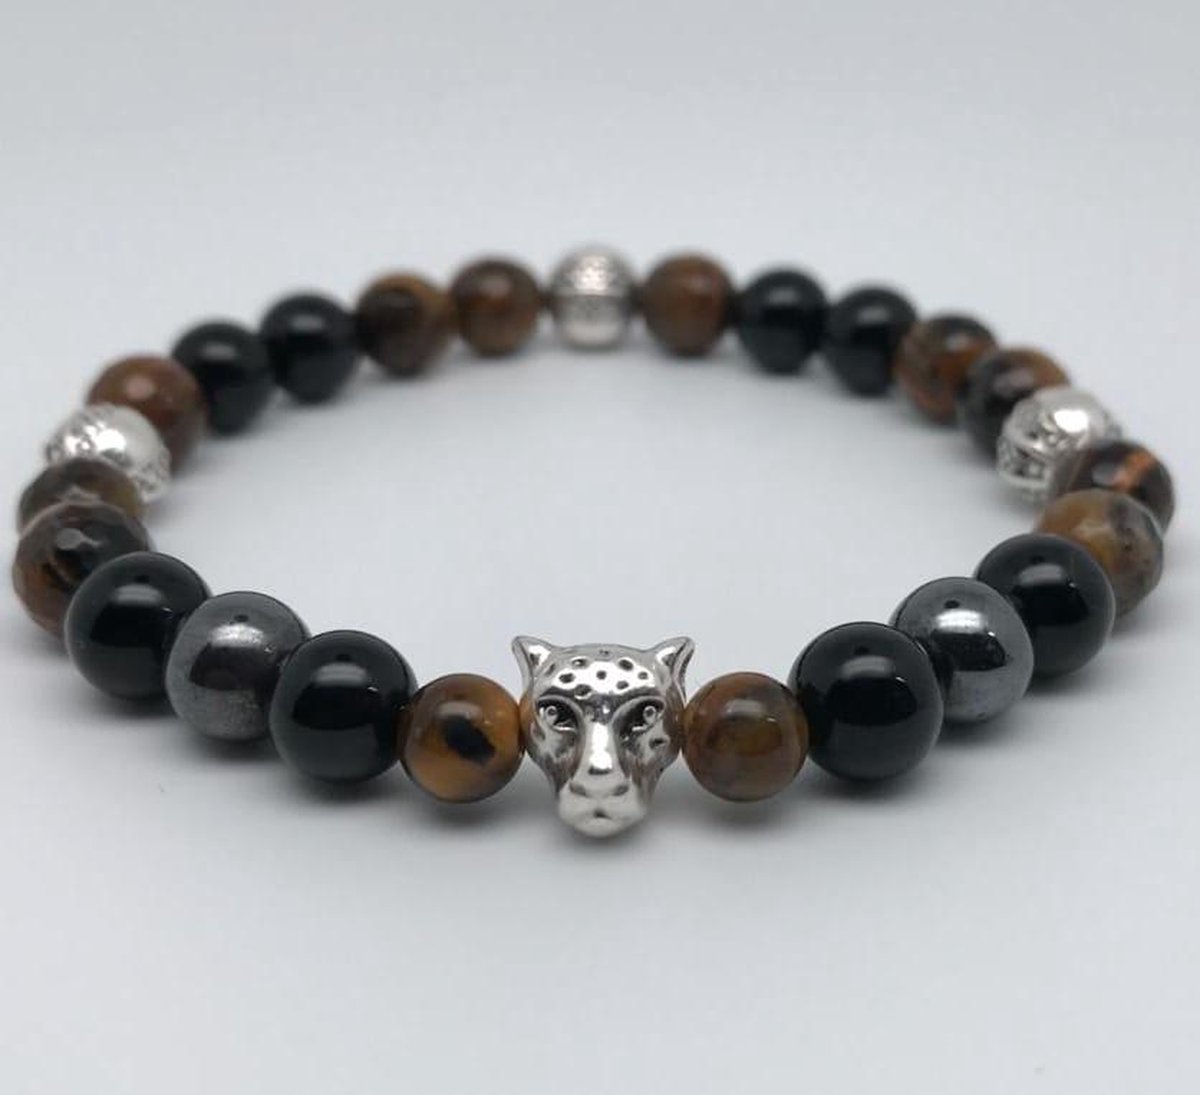 L-onca - Armband - Kralen armband - Edelsteen / gemstones Tiger eye, black onyx - natuursteen - Cadeau voor hem/haar